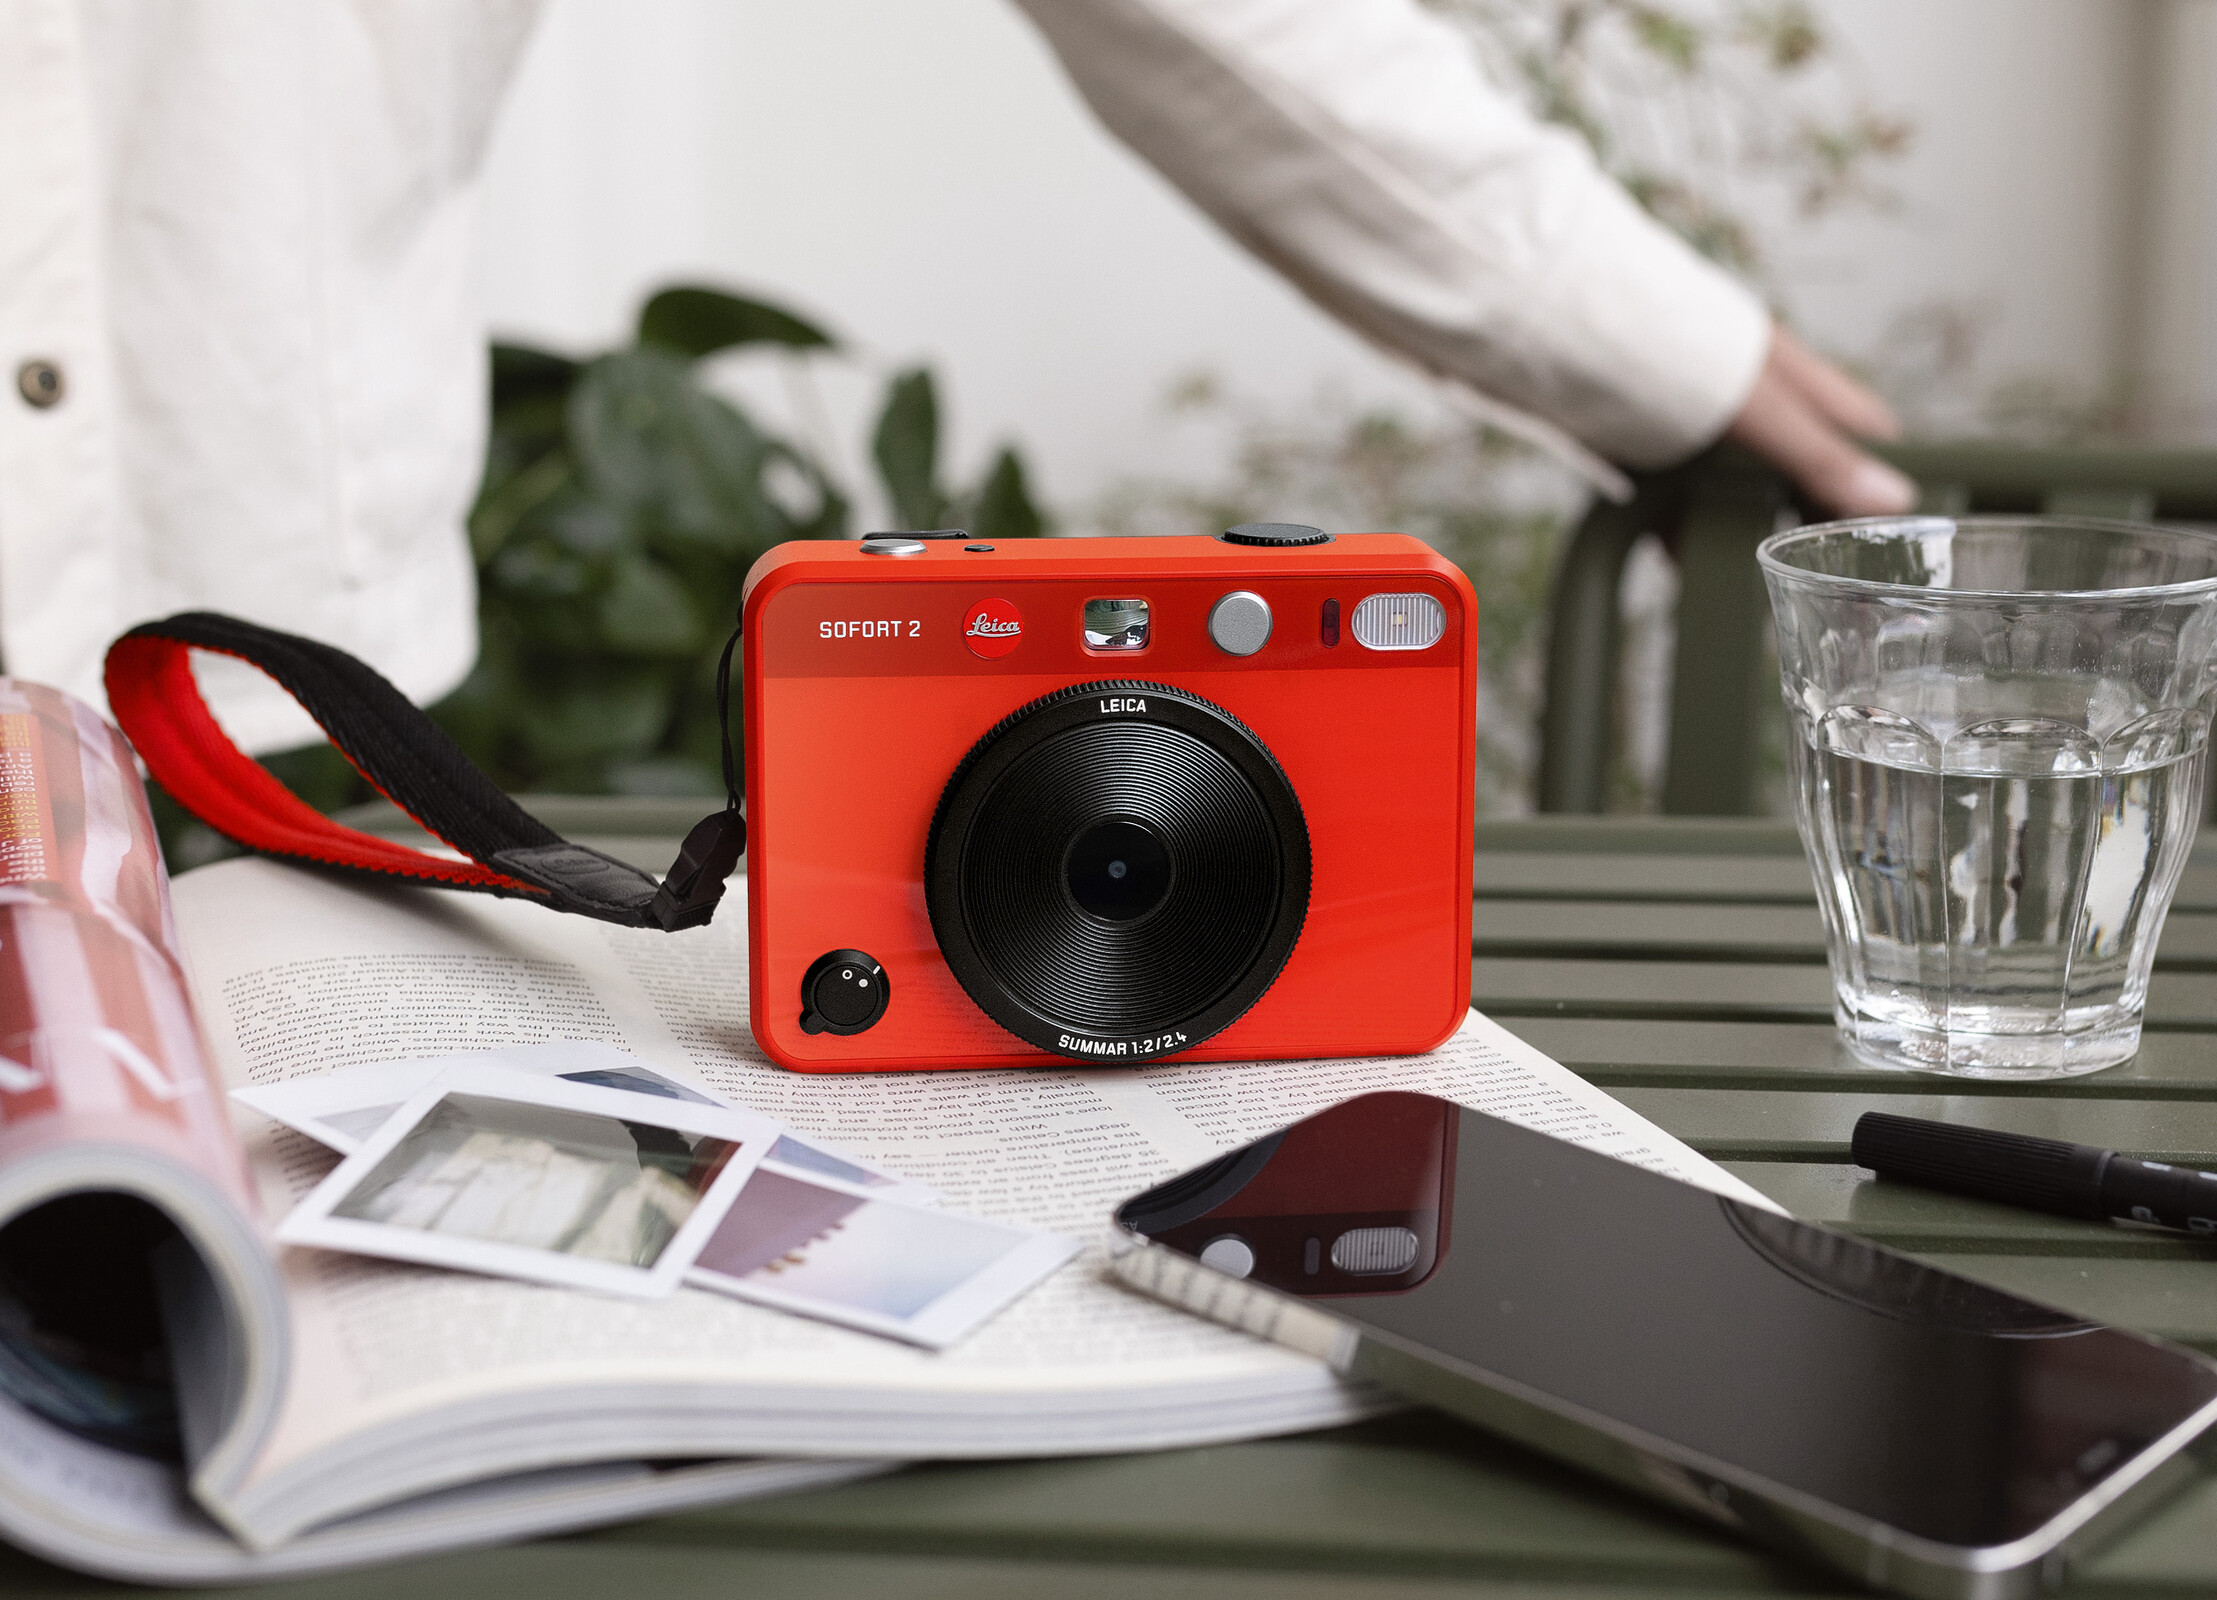 La nuova fotocamera istantanea ibrida Sofort 2 di Leica è la più economica  tra le Leica attualmente disponibili -  News